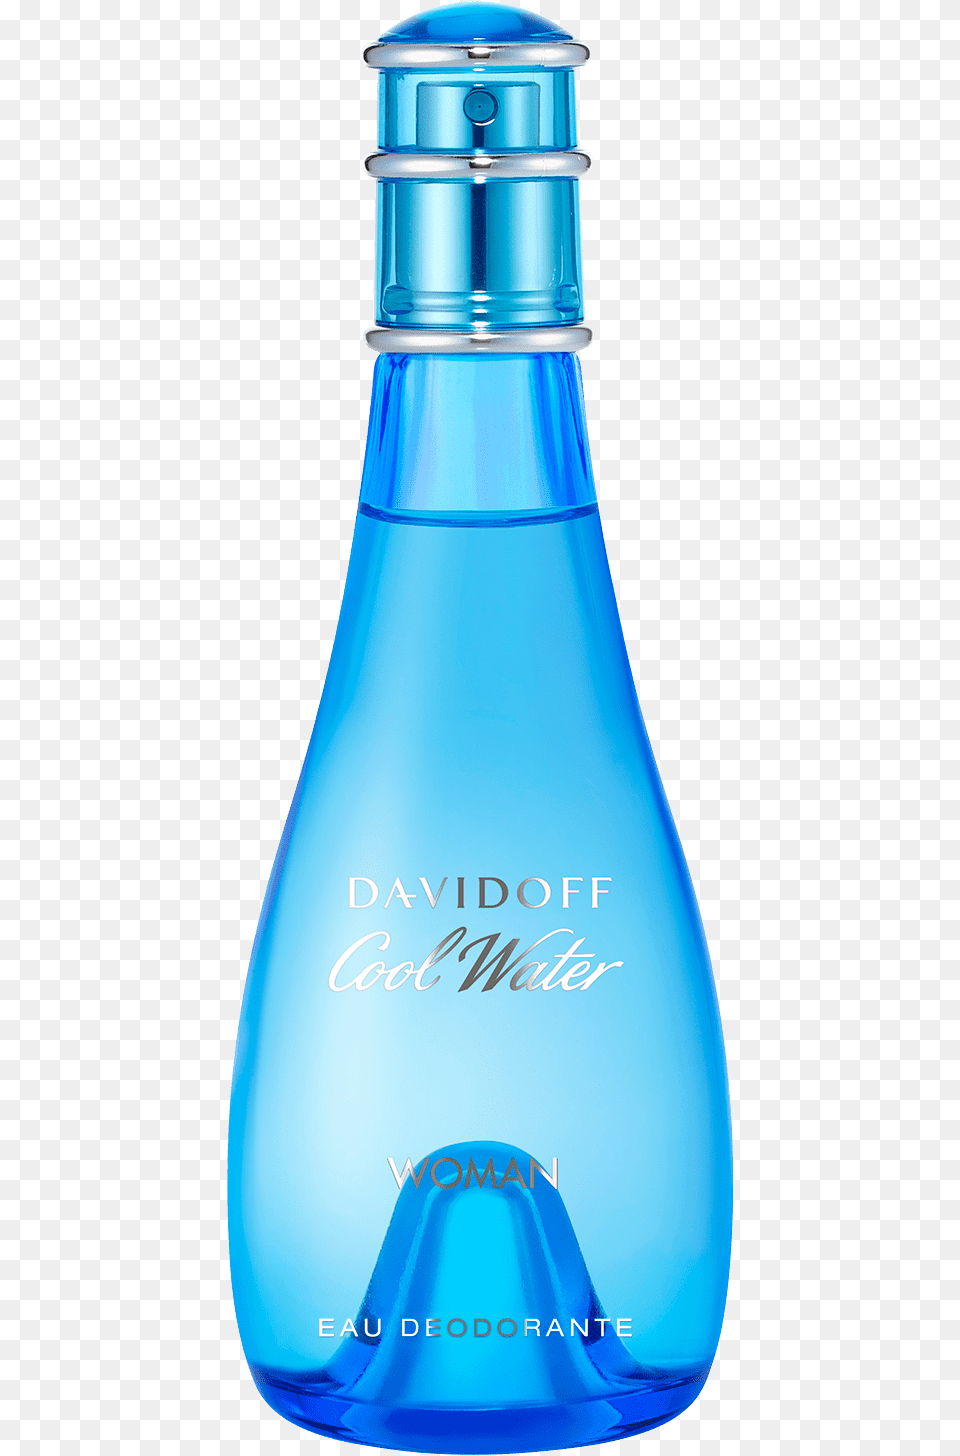 Davidoff Cool Water Lady, Bottle, Cosmetics, Perfume, Shaker Png Image